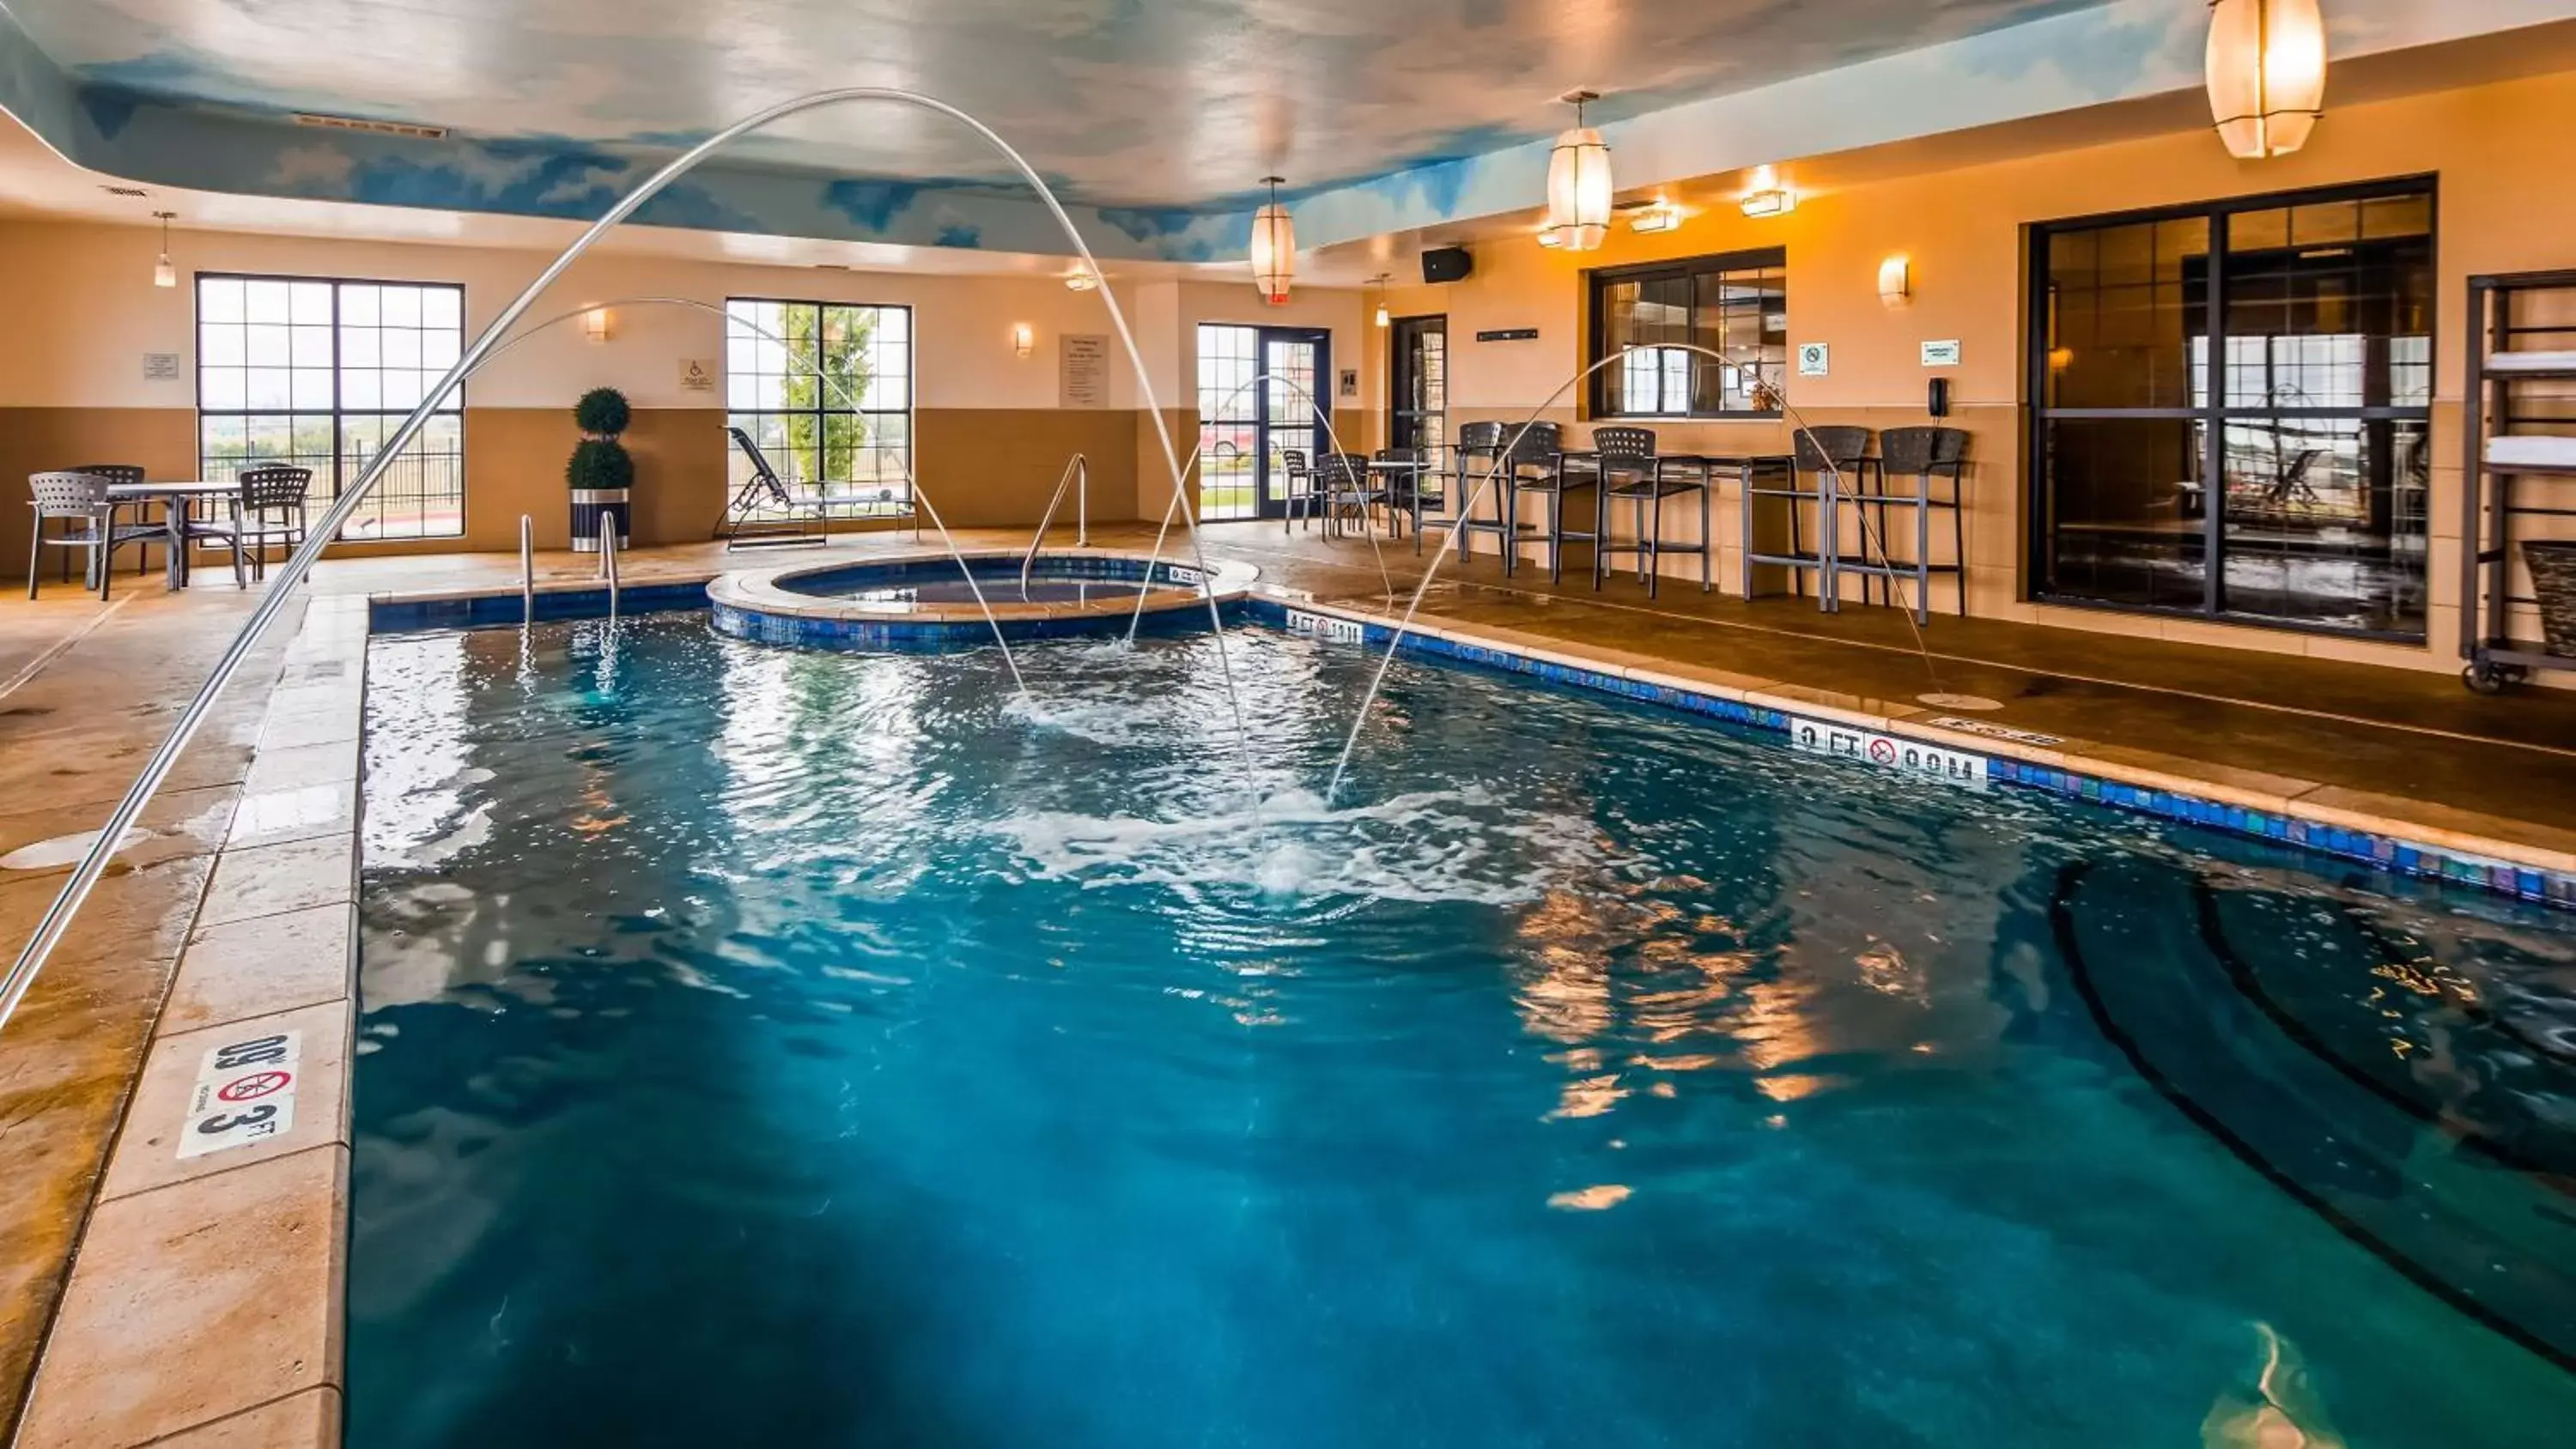 On site, Swimming Pool in Best Western Plus Emerald Inn & Suites